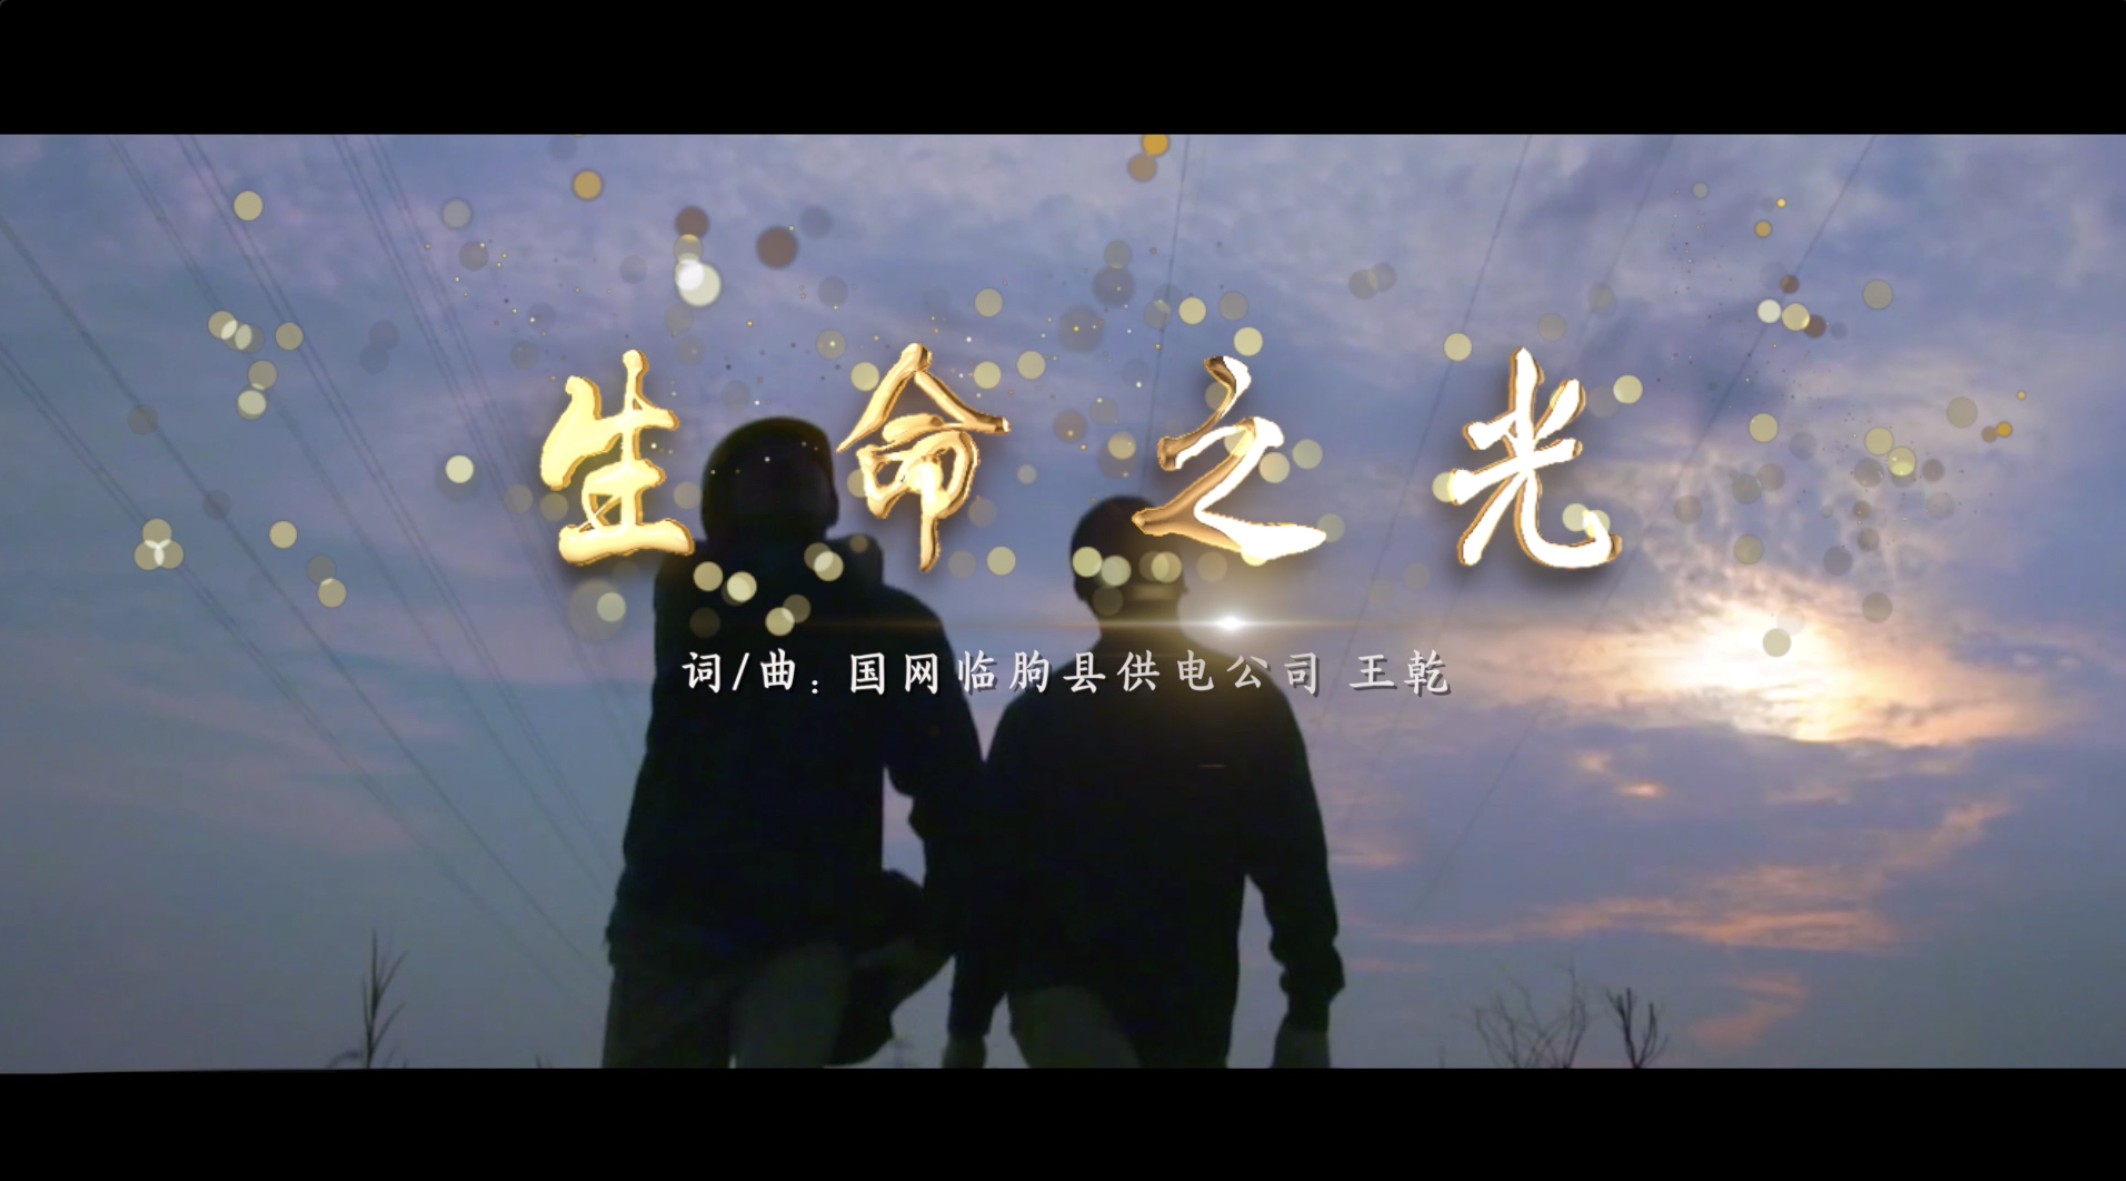 原创歌曲MV「生命之光」——国网临朐供电公司 